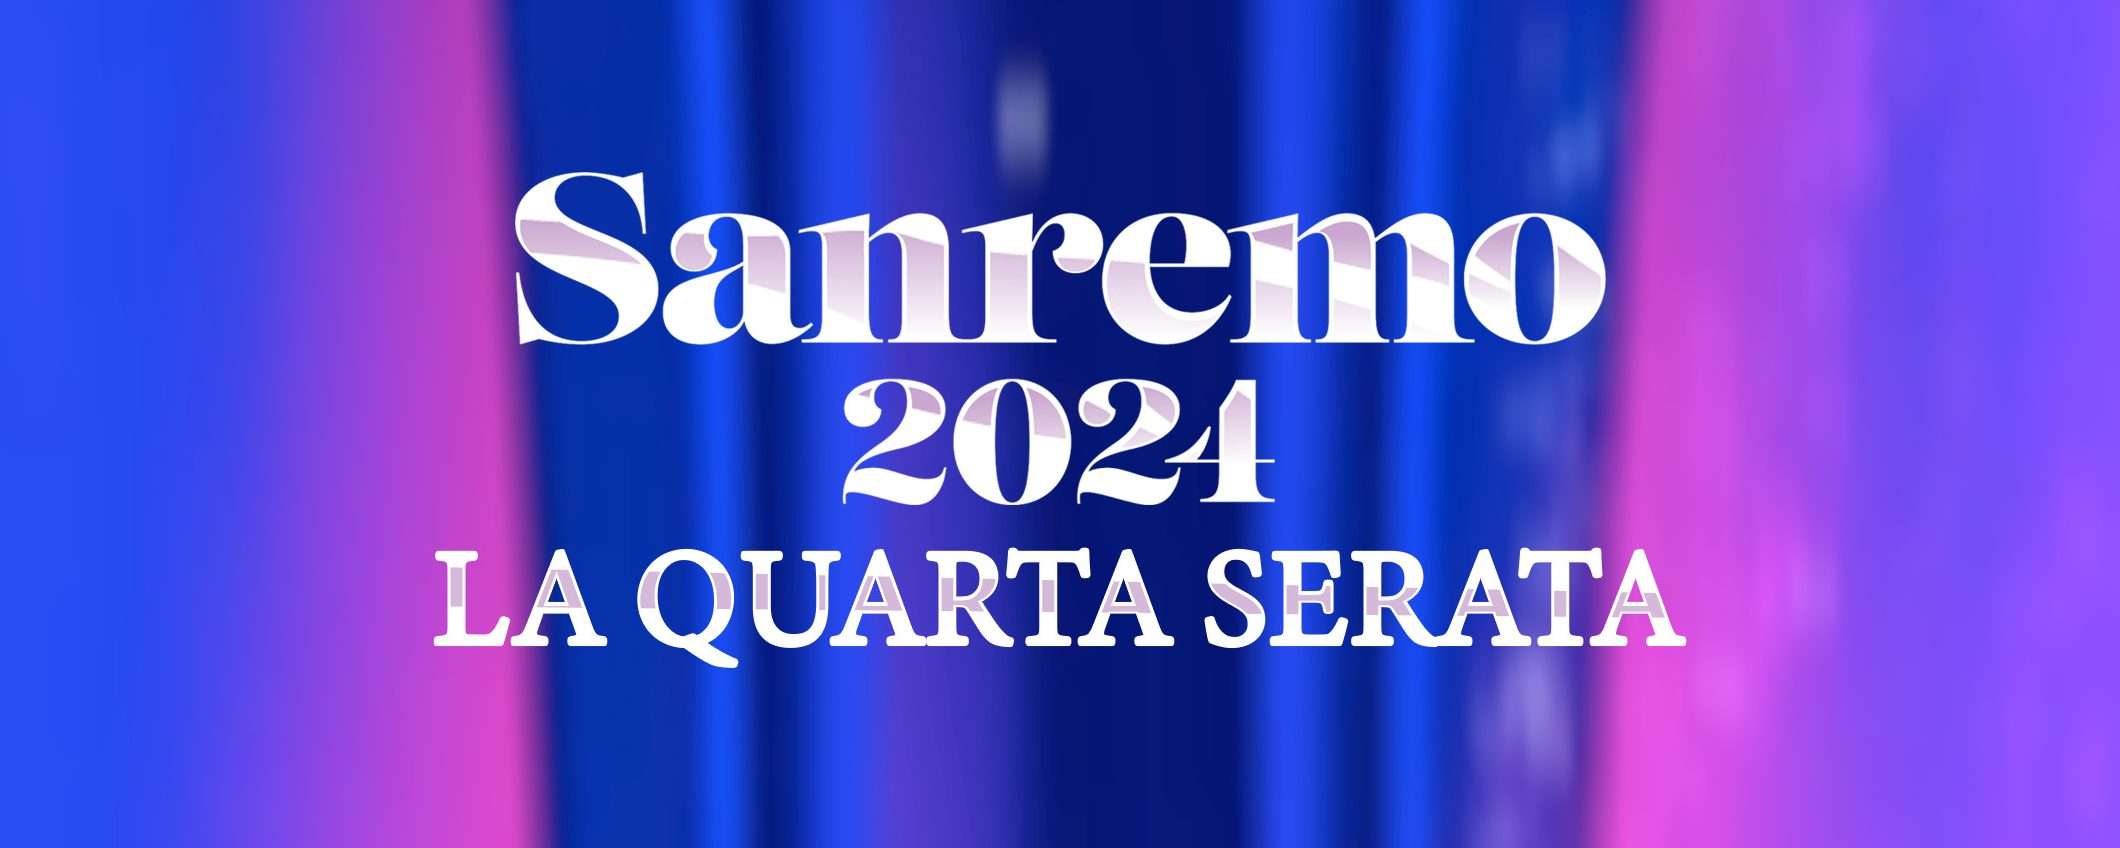 Sanremo, serata cover: guardala gratis in streaming dall'estero